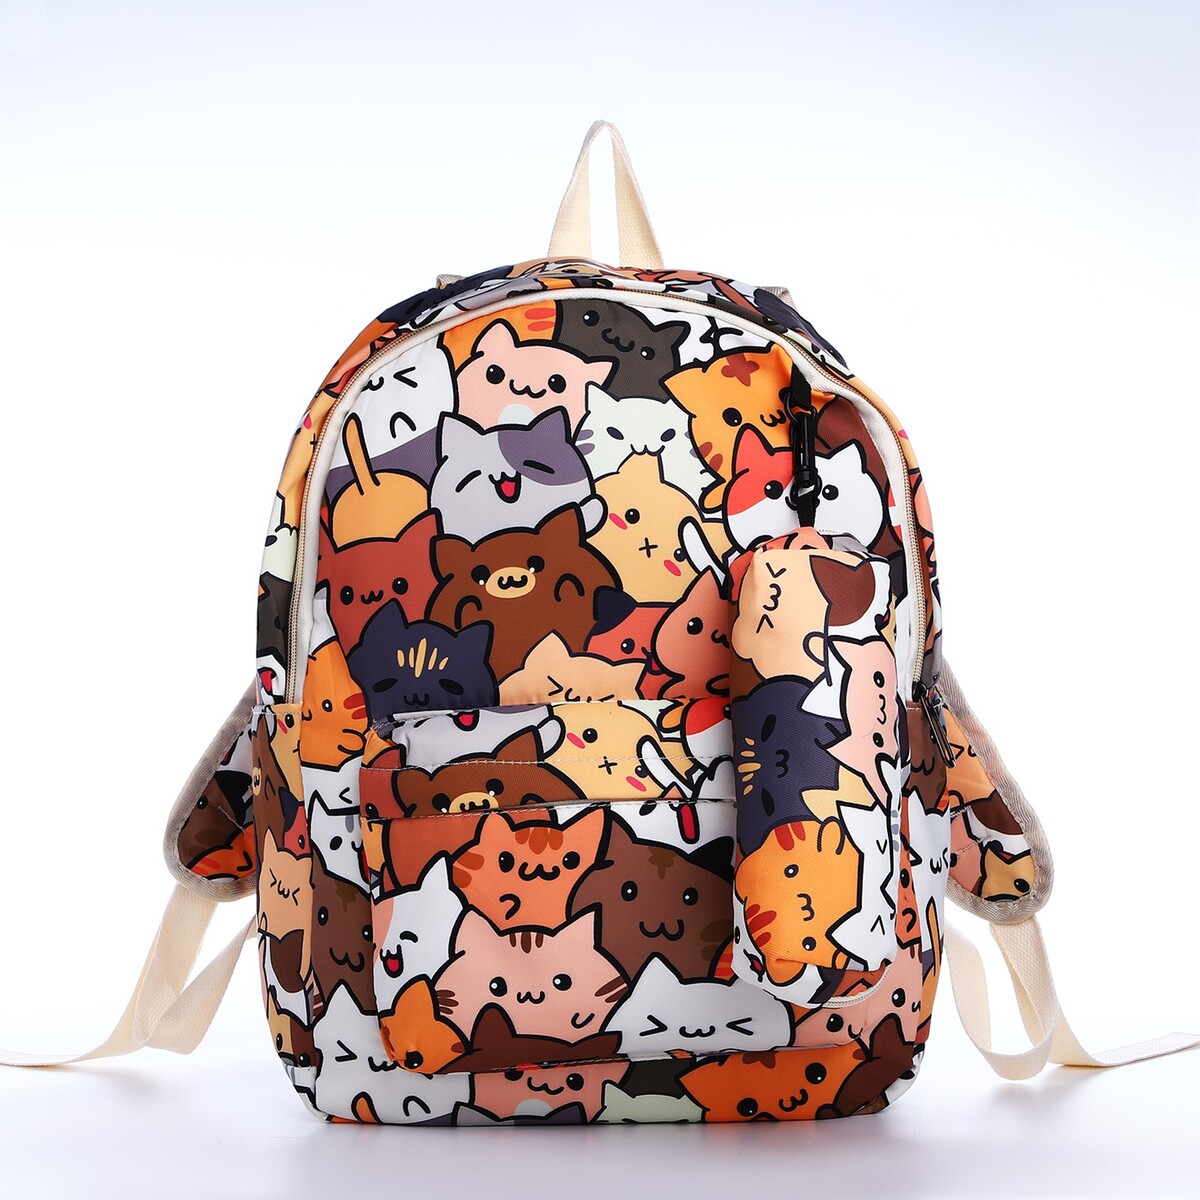 Рюкзак школьный из текстиля на молнии, 3 кармана, пенал, цвет коричневый/оранжевый рюкзак для ноутбука 15 6 pc pet pcpkb0115bn коричневый оранжевый полиэстер